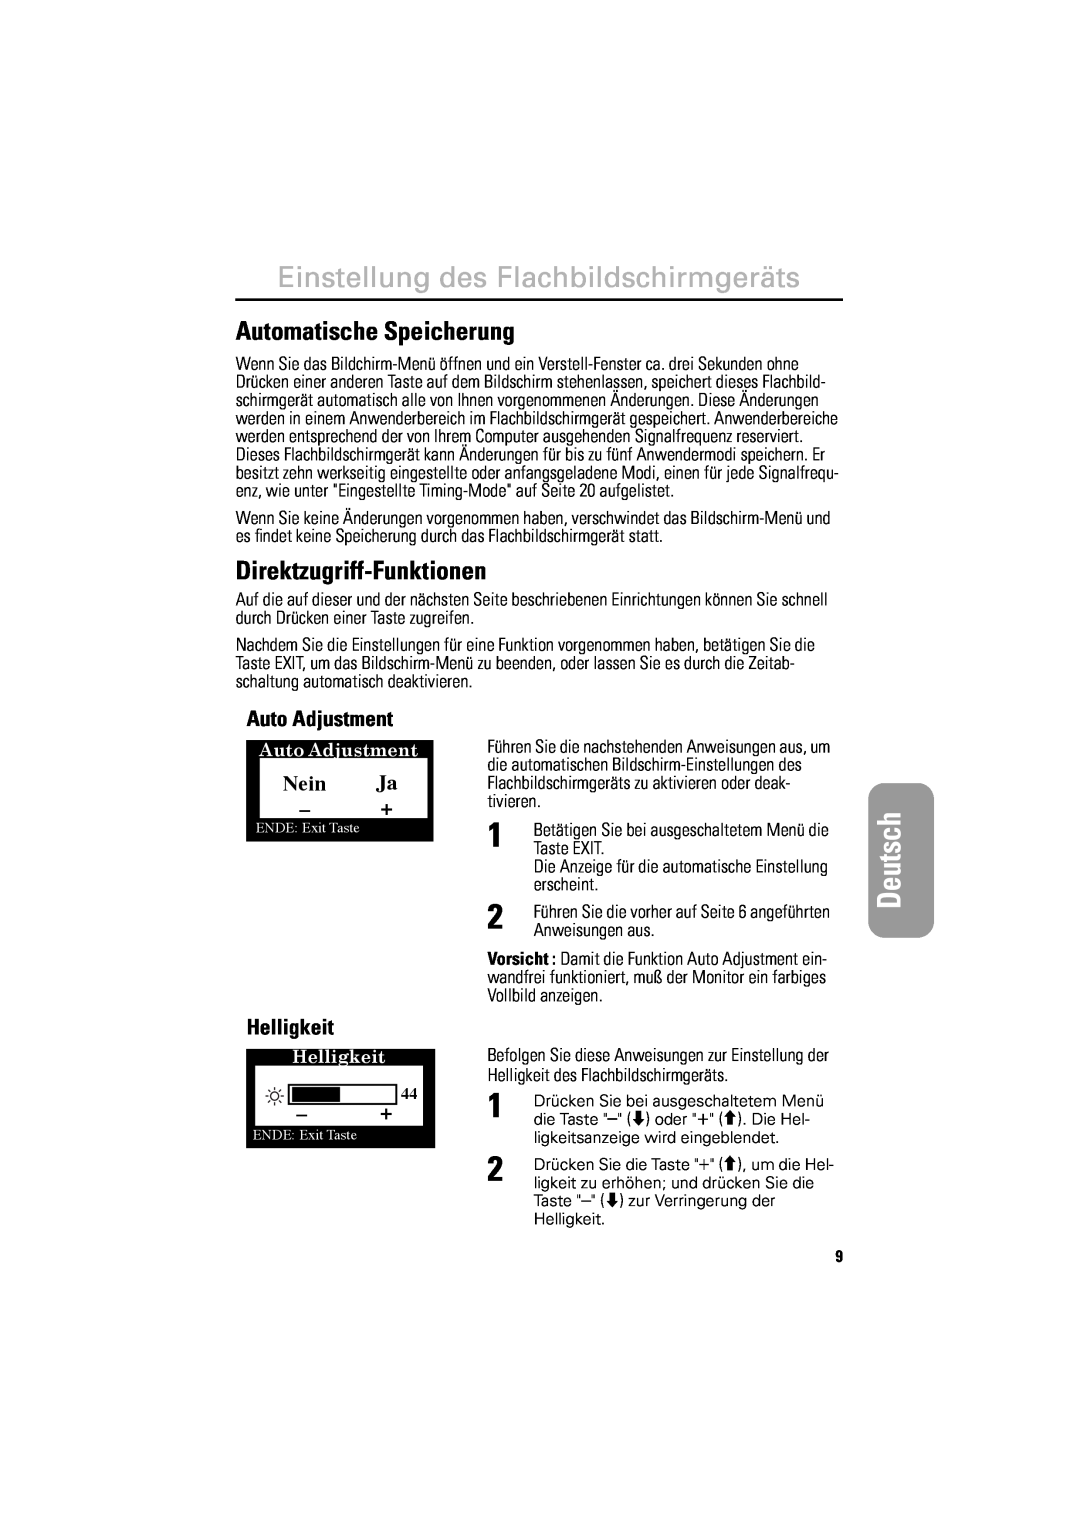 Samsung DV18MSPAN/EDC manual Français English Español, Italiano Deutsch Deutsch, Automatische Speicherung, Auto Adjustment 